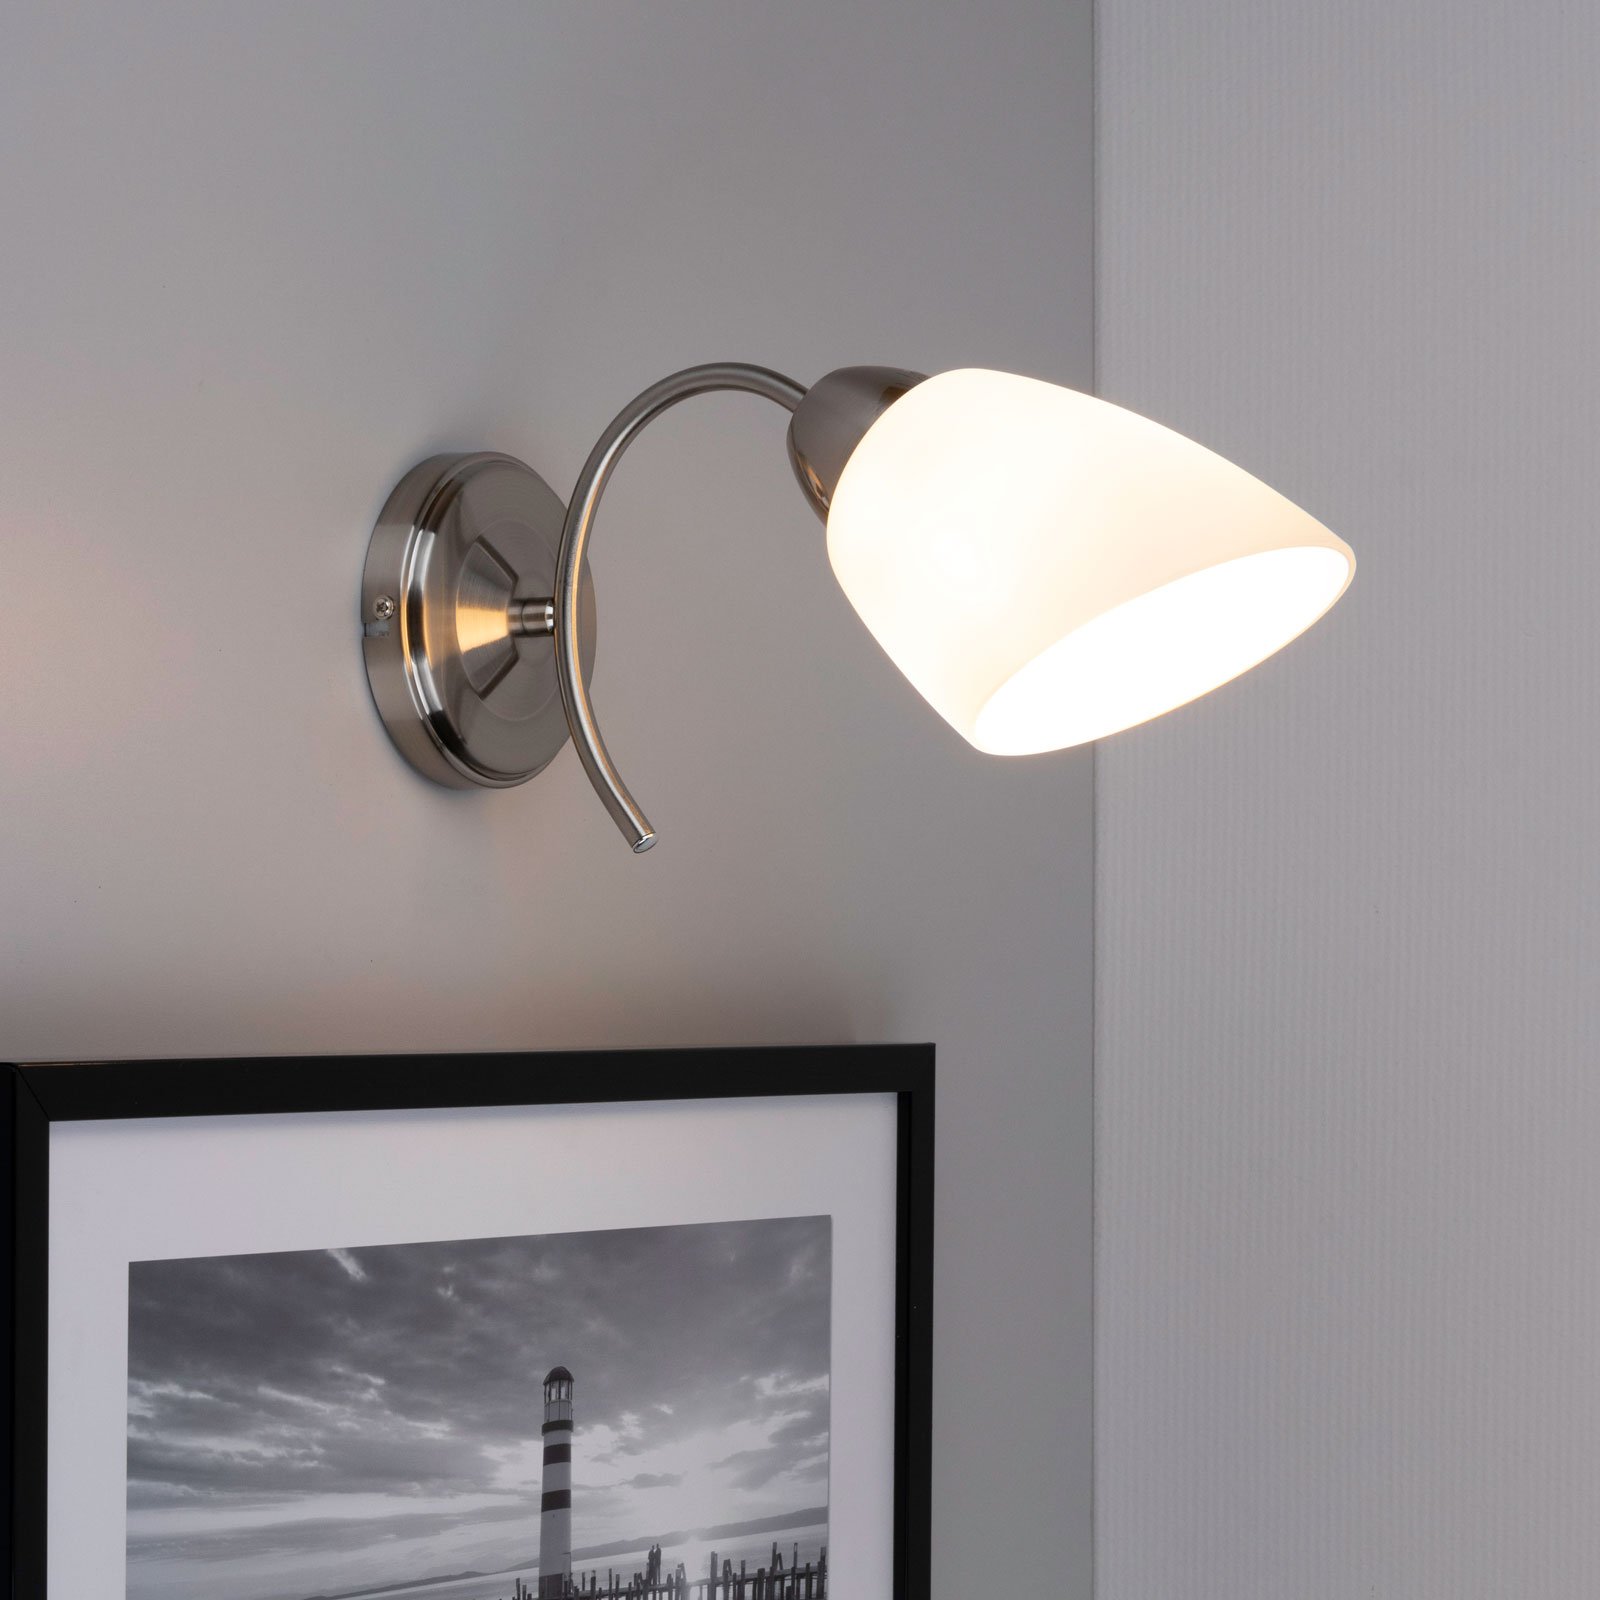 Varietta wall lamp, glass lampshade, nickel